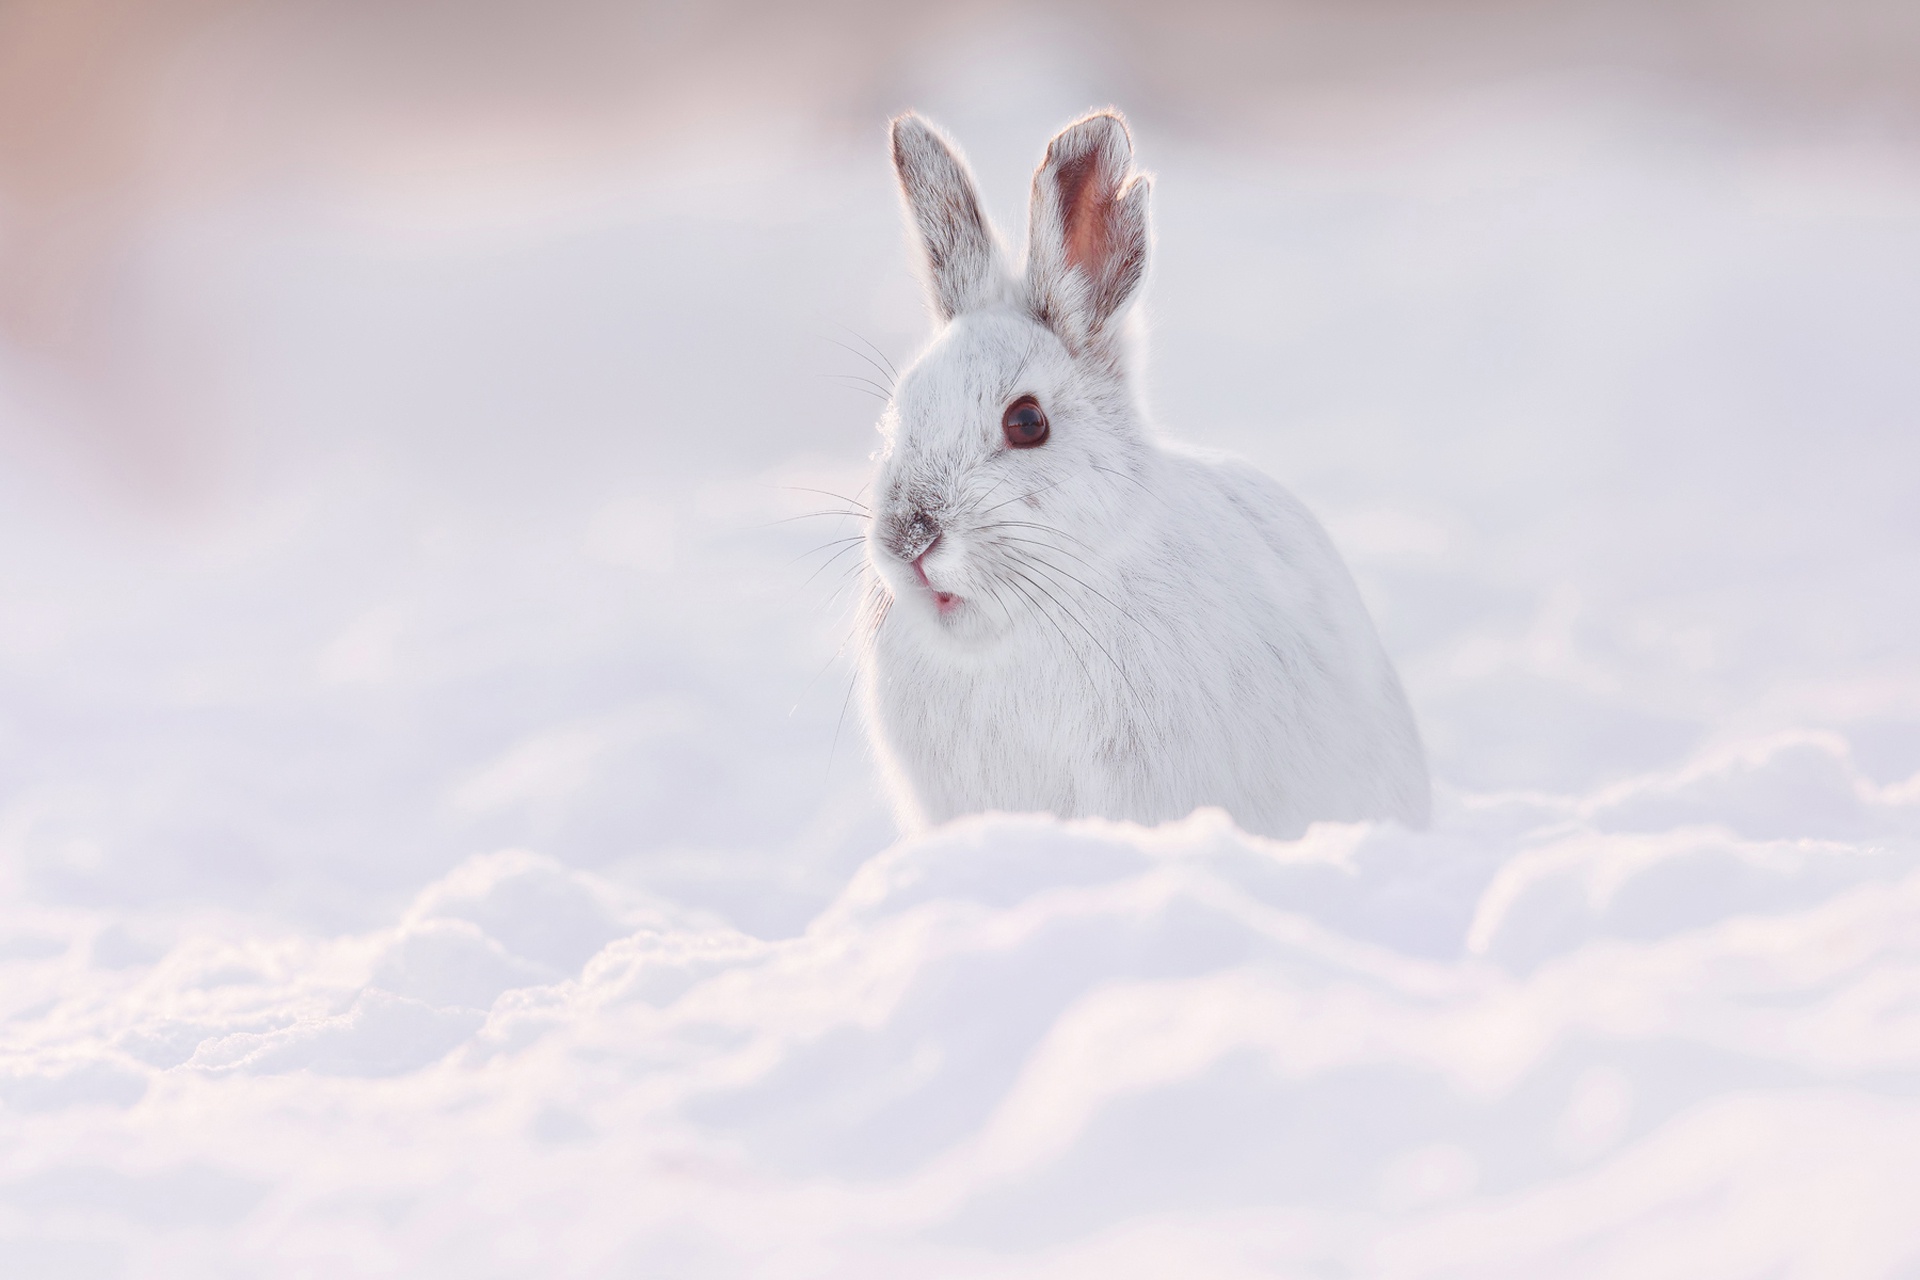 Descarga gratuita de fondo de pantalla para móvil de Animales, Invierno, Nieve, Liebre.